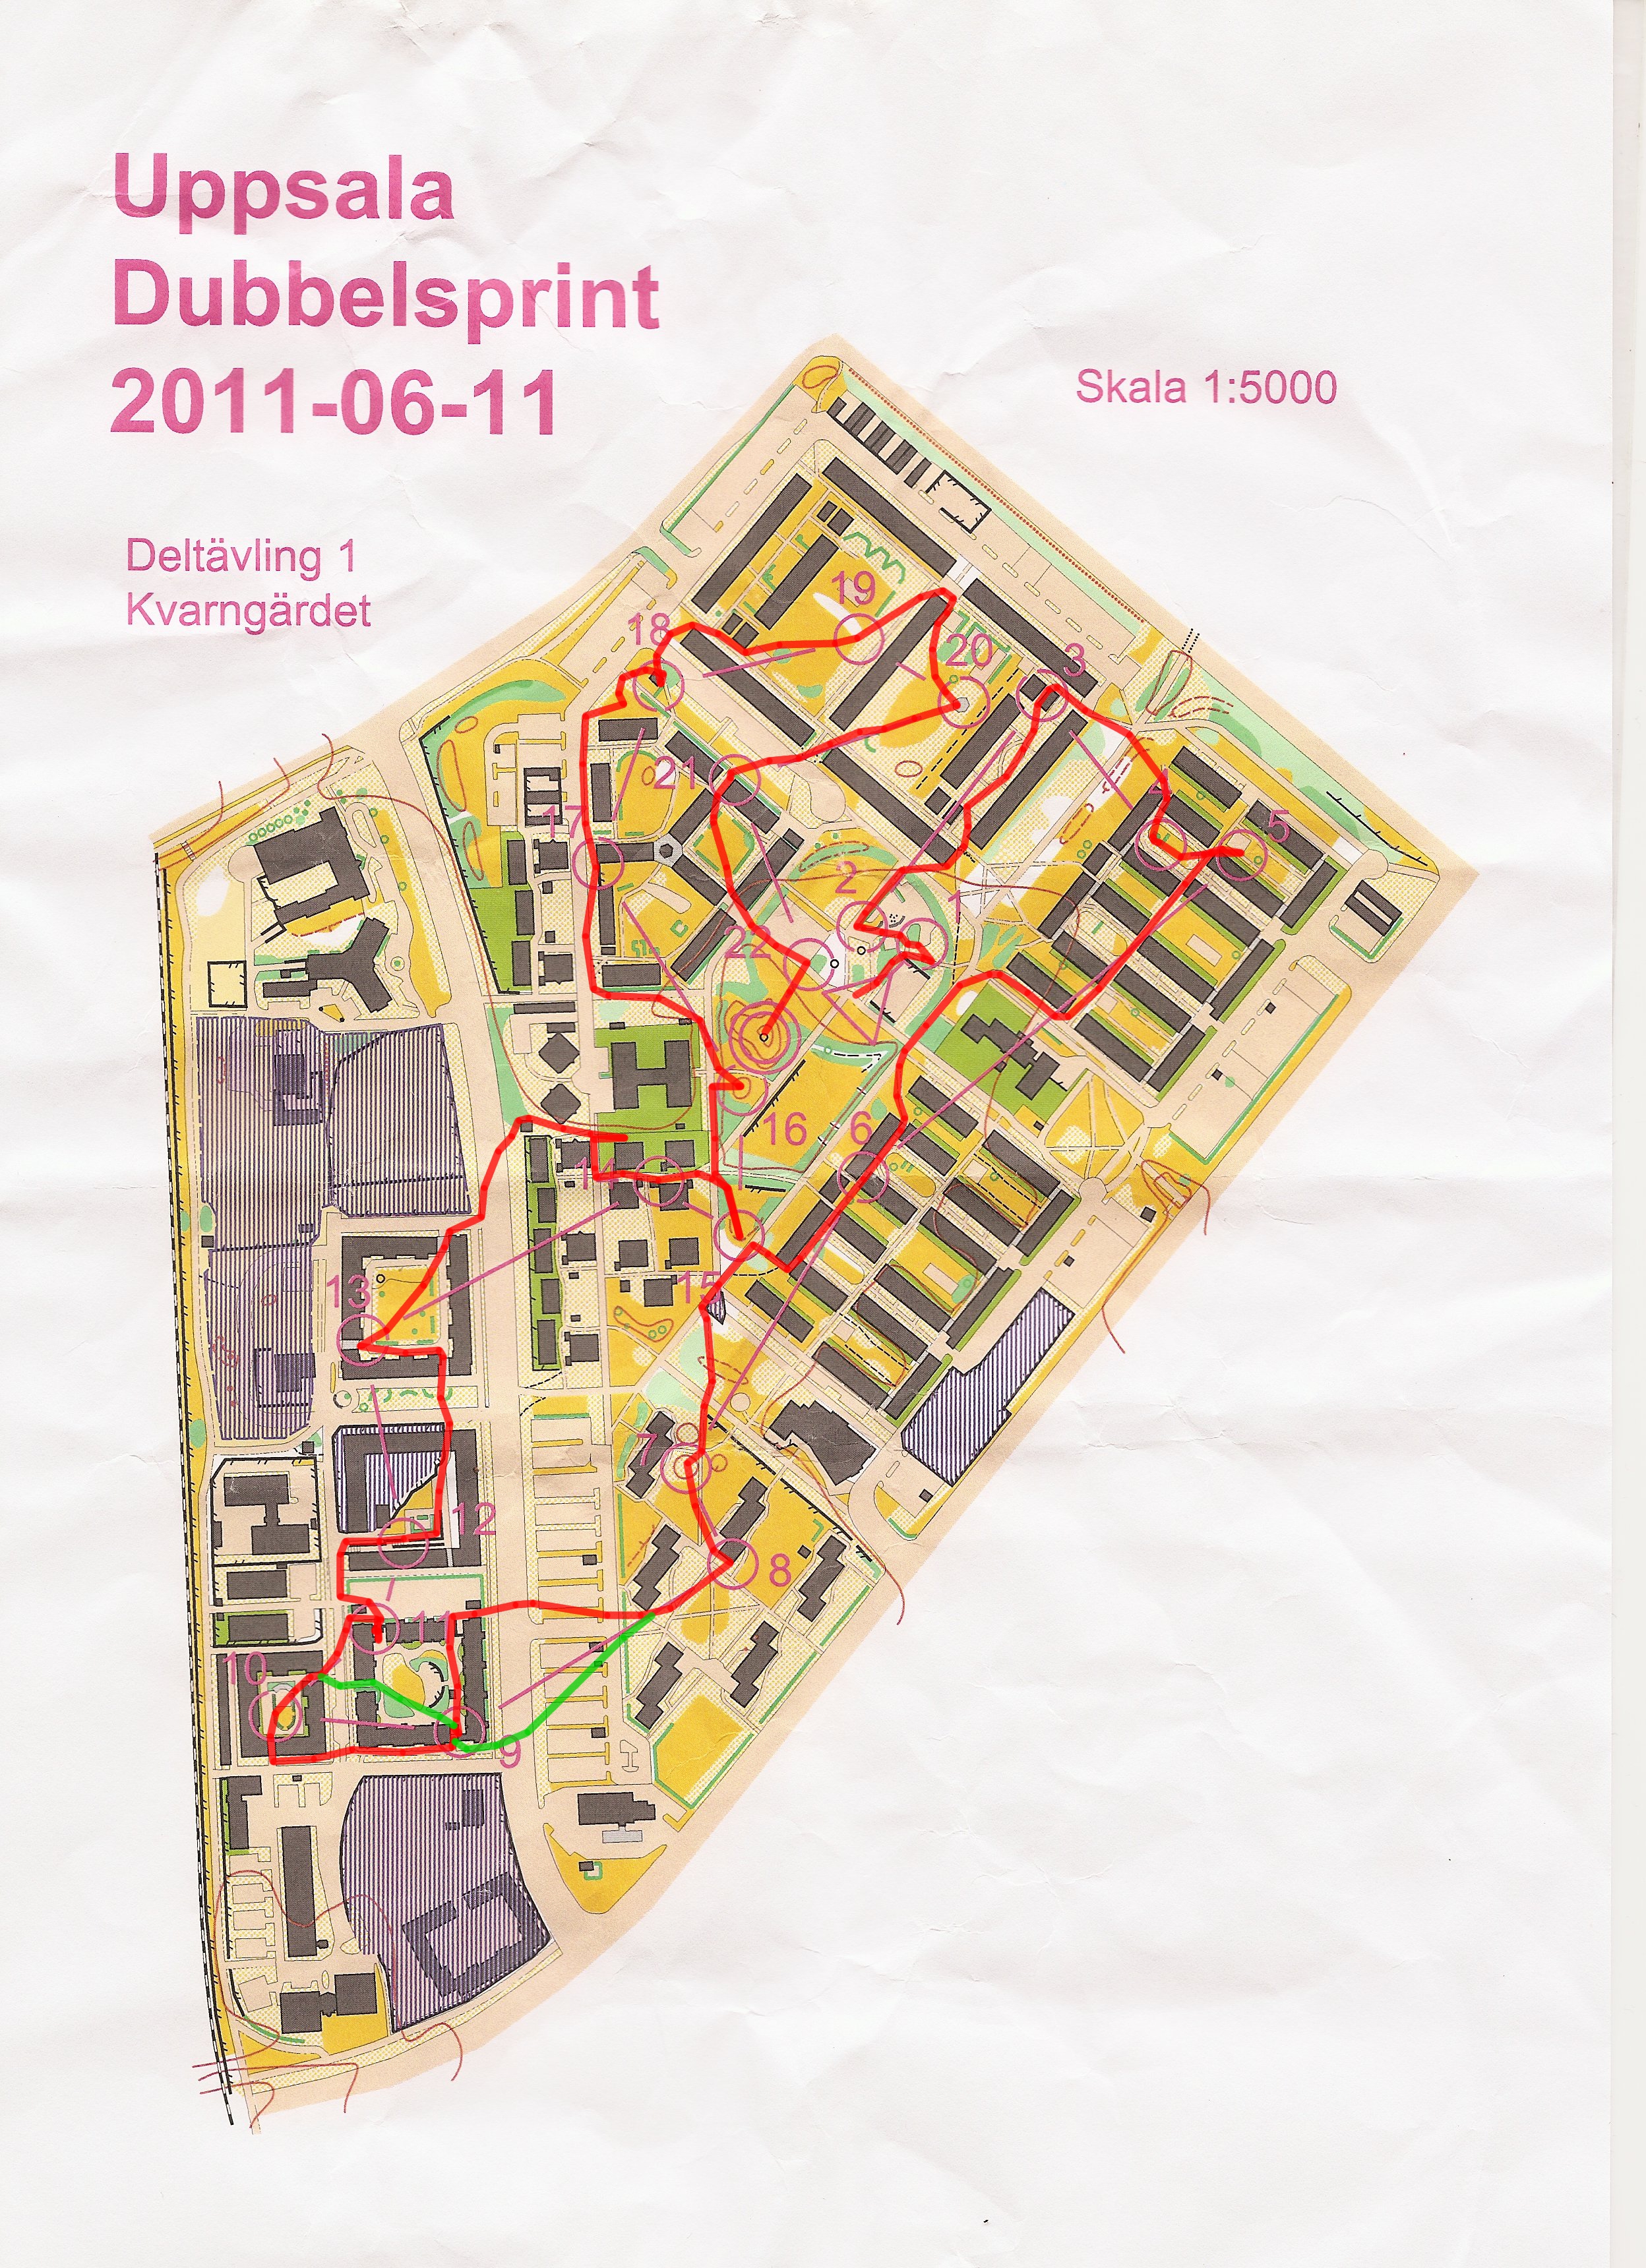 Uppsala Dubbelsprint Deltävling 1 (2011-06-11)